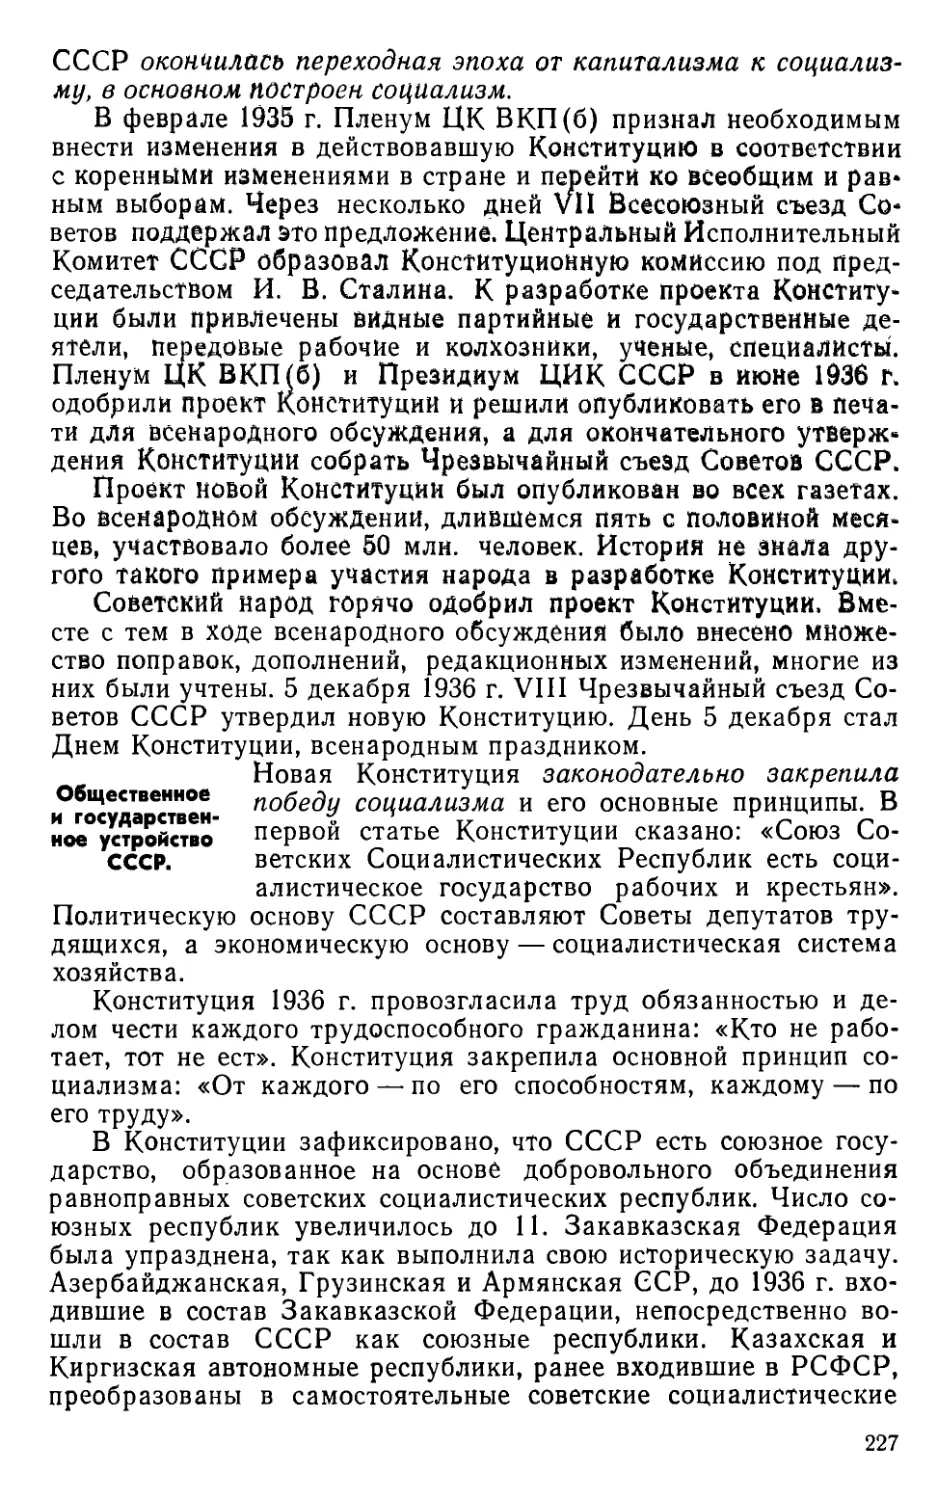 § 41. Конституция СССР 1936 г.